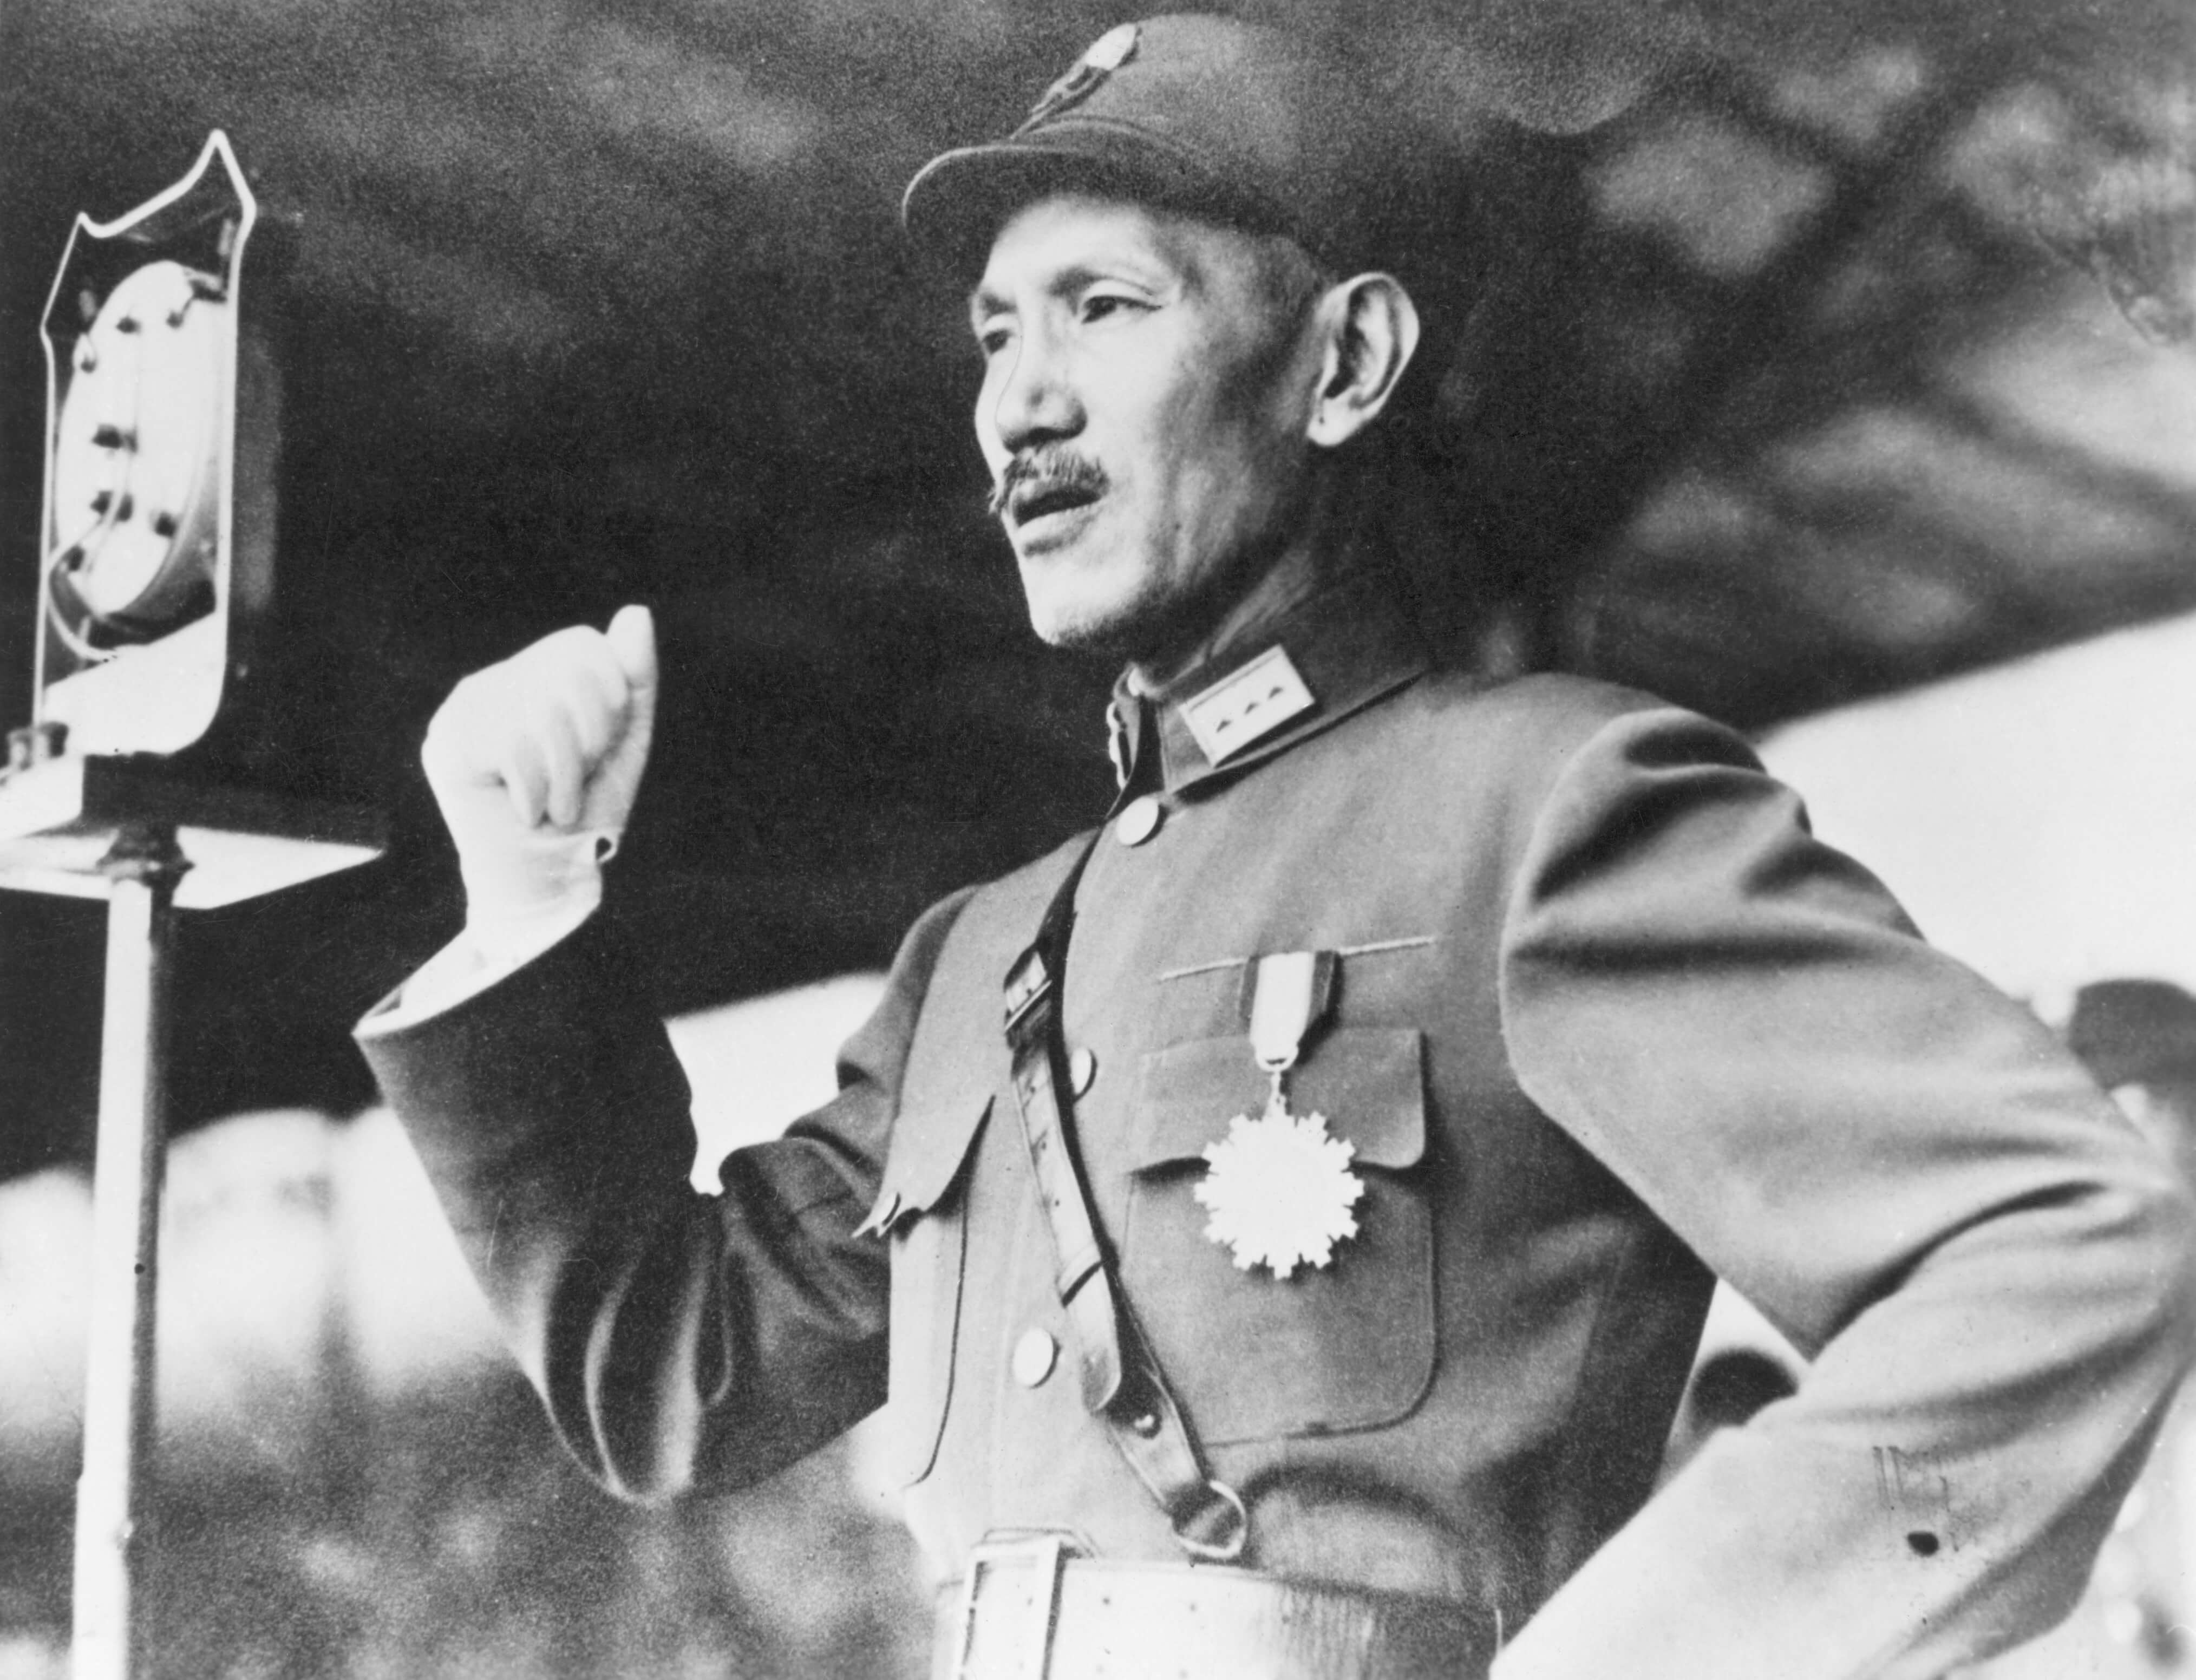 Chiang Kai-shek run to Taiwan afta im defeat by di communists for 1949